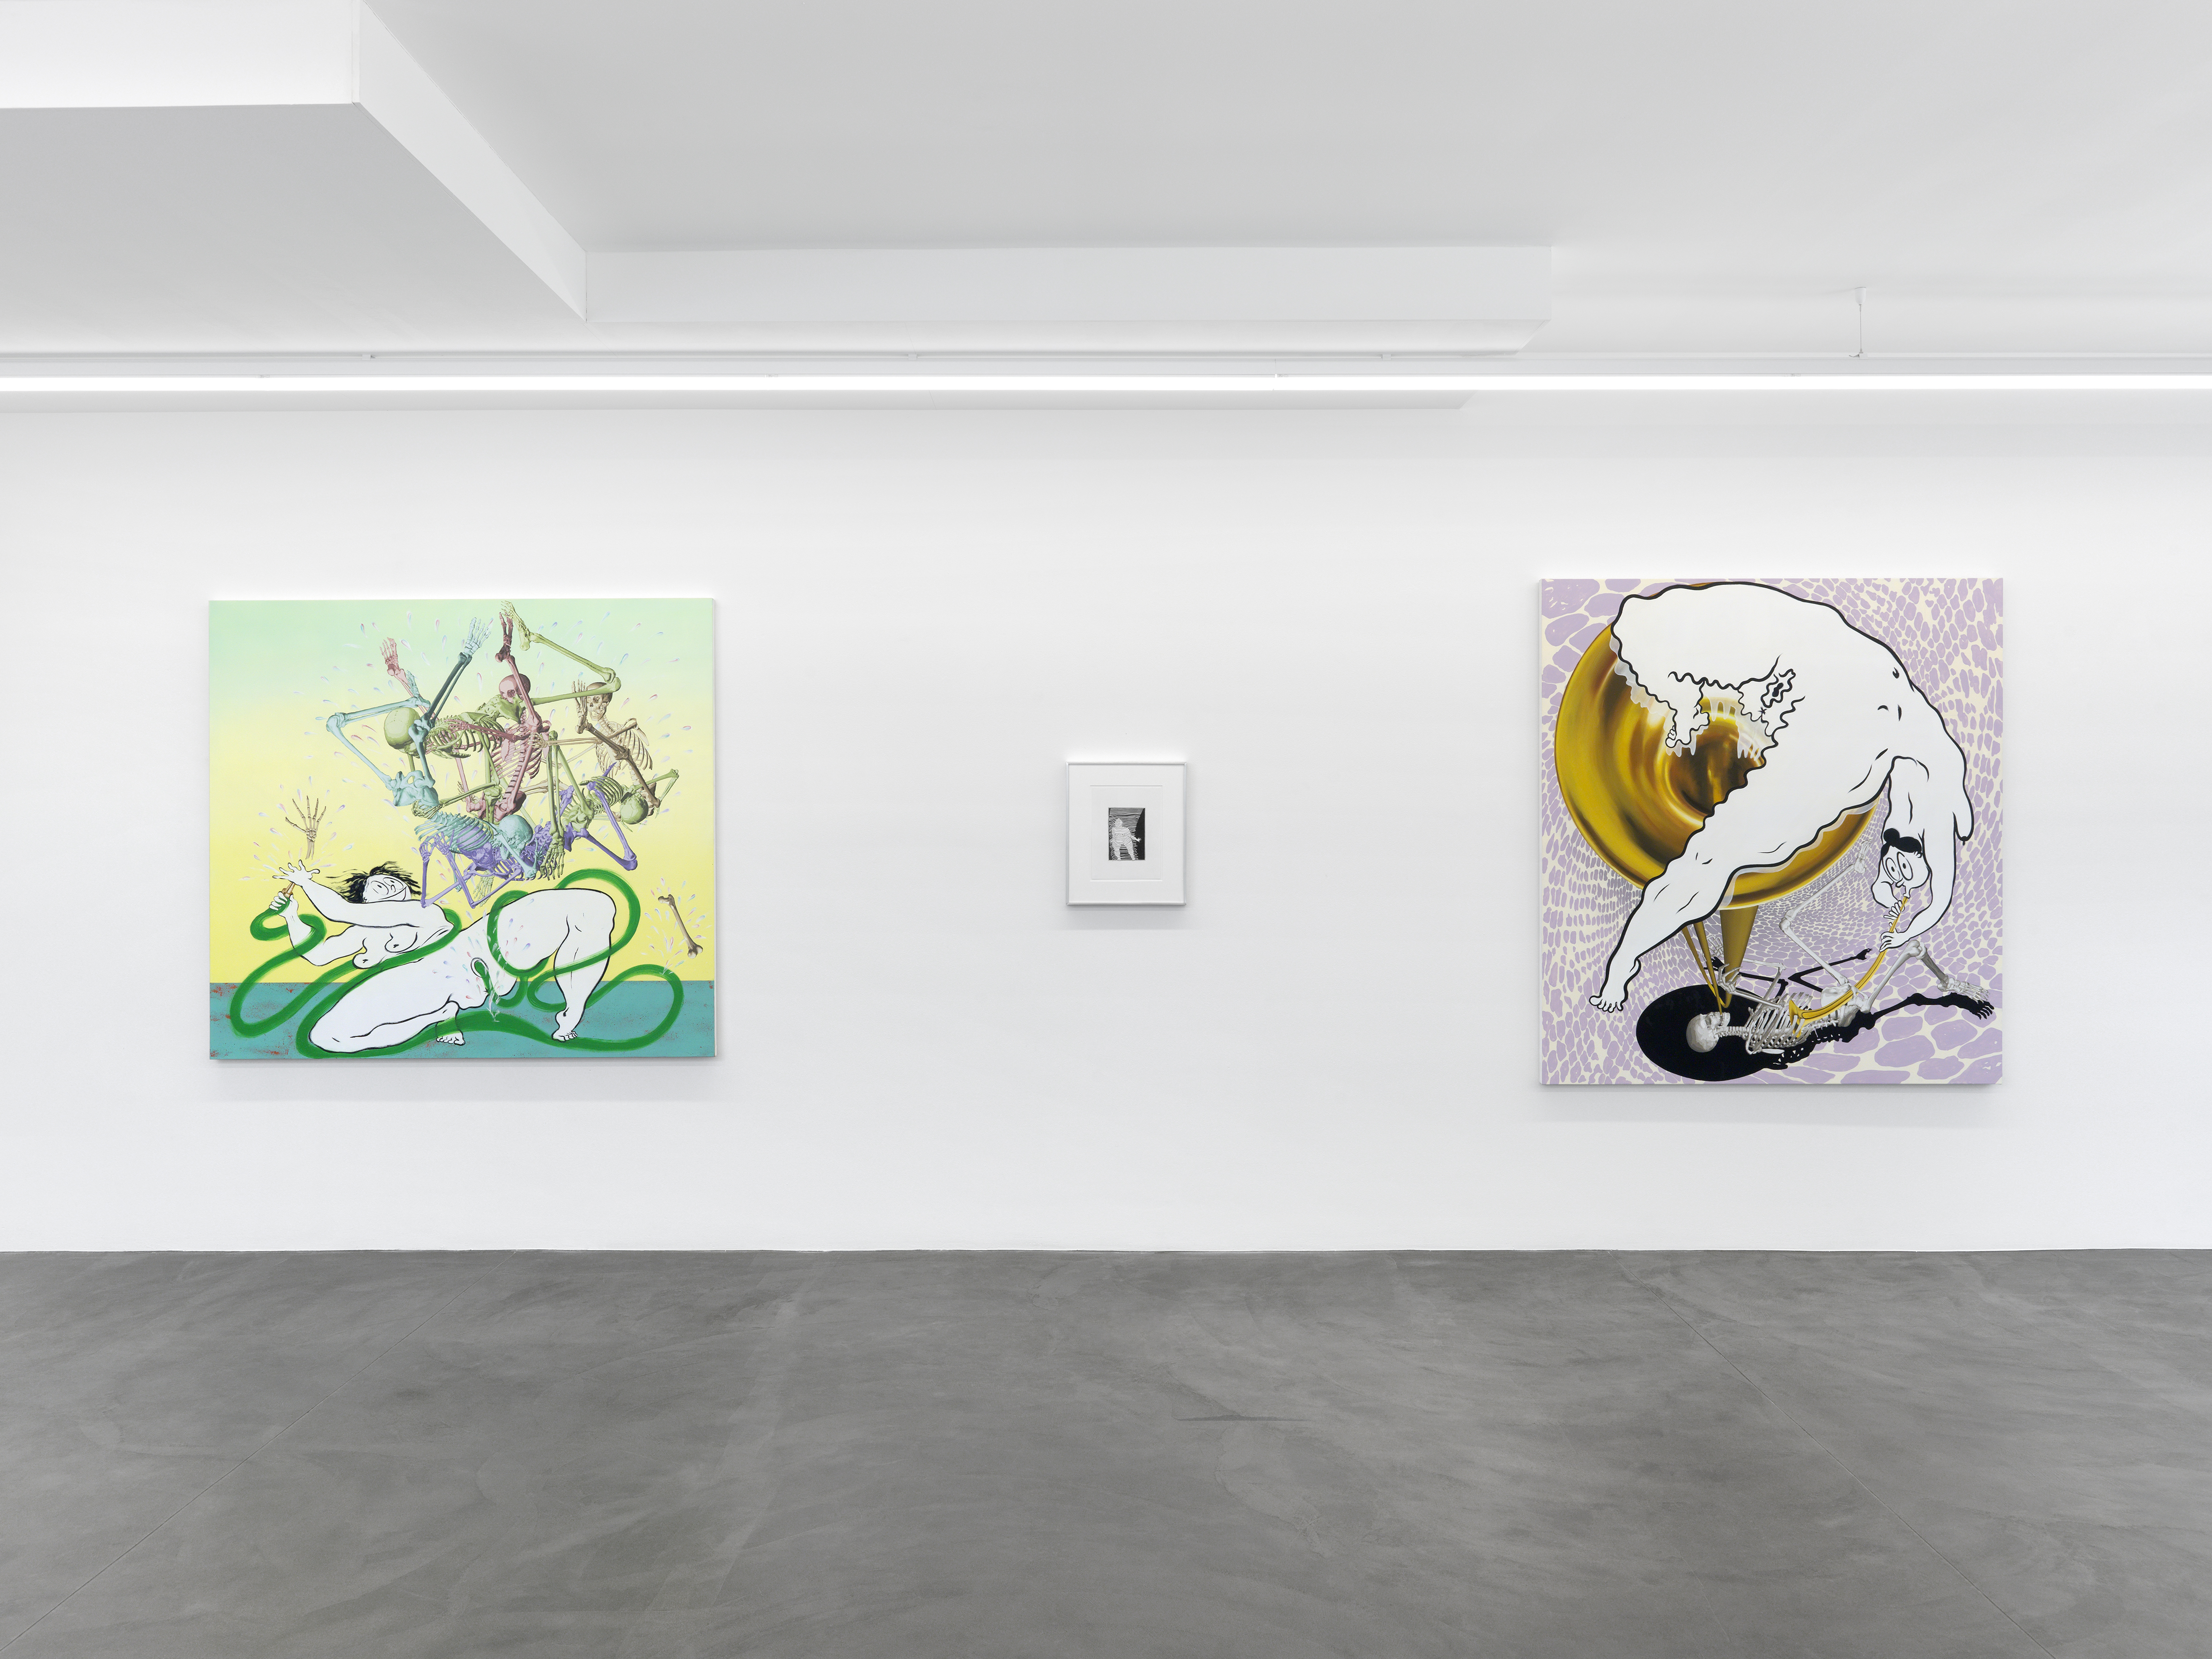 Installation view, Fatebe: Ebecho Muslimova, Galerie Maria Bernheim, Zürich, Switzerland, 2020